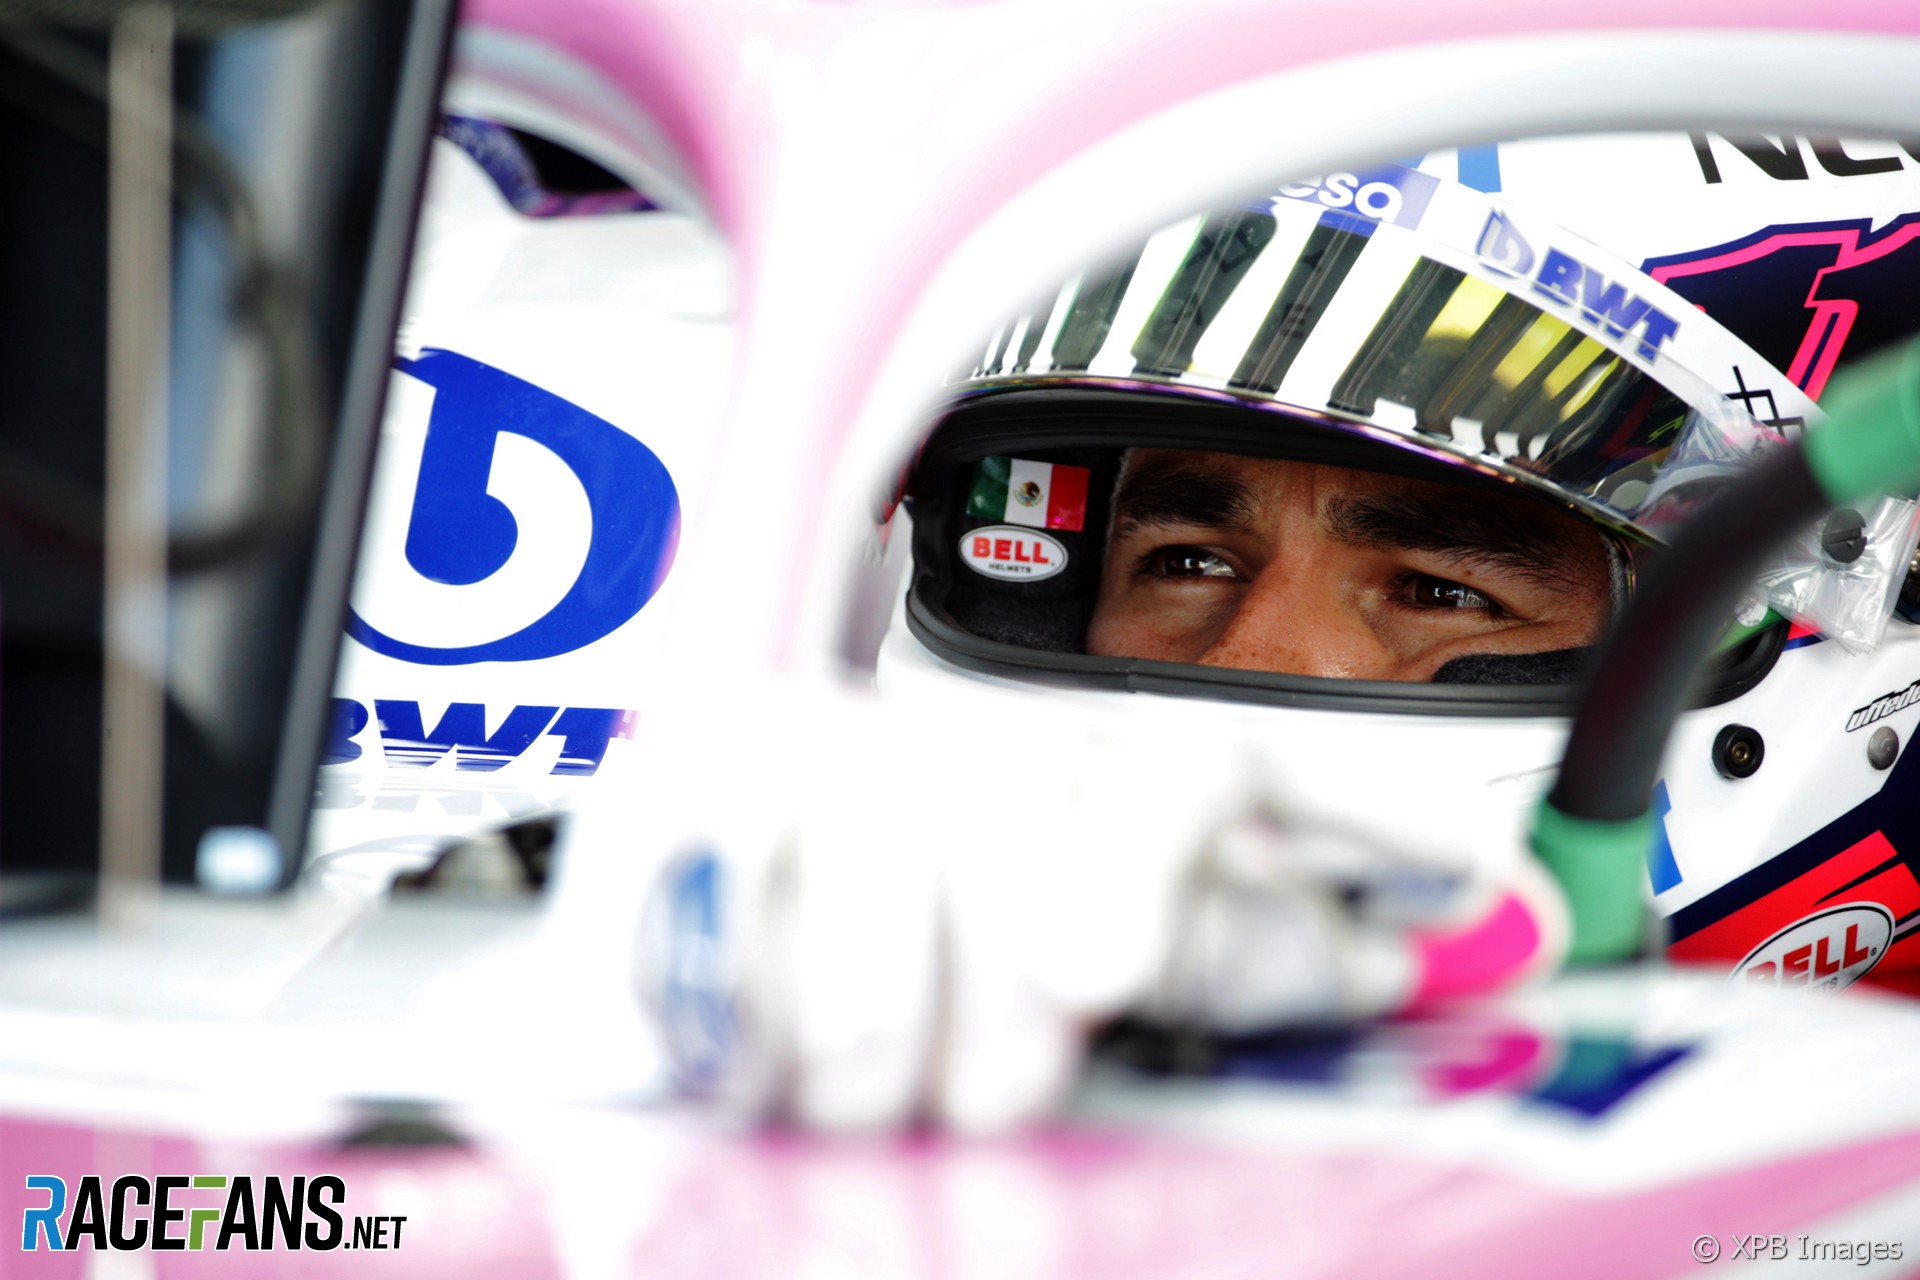 Sergio Perez, Racing Point, Paul Ricard, 2019